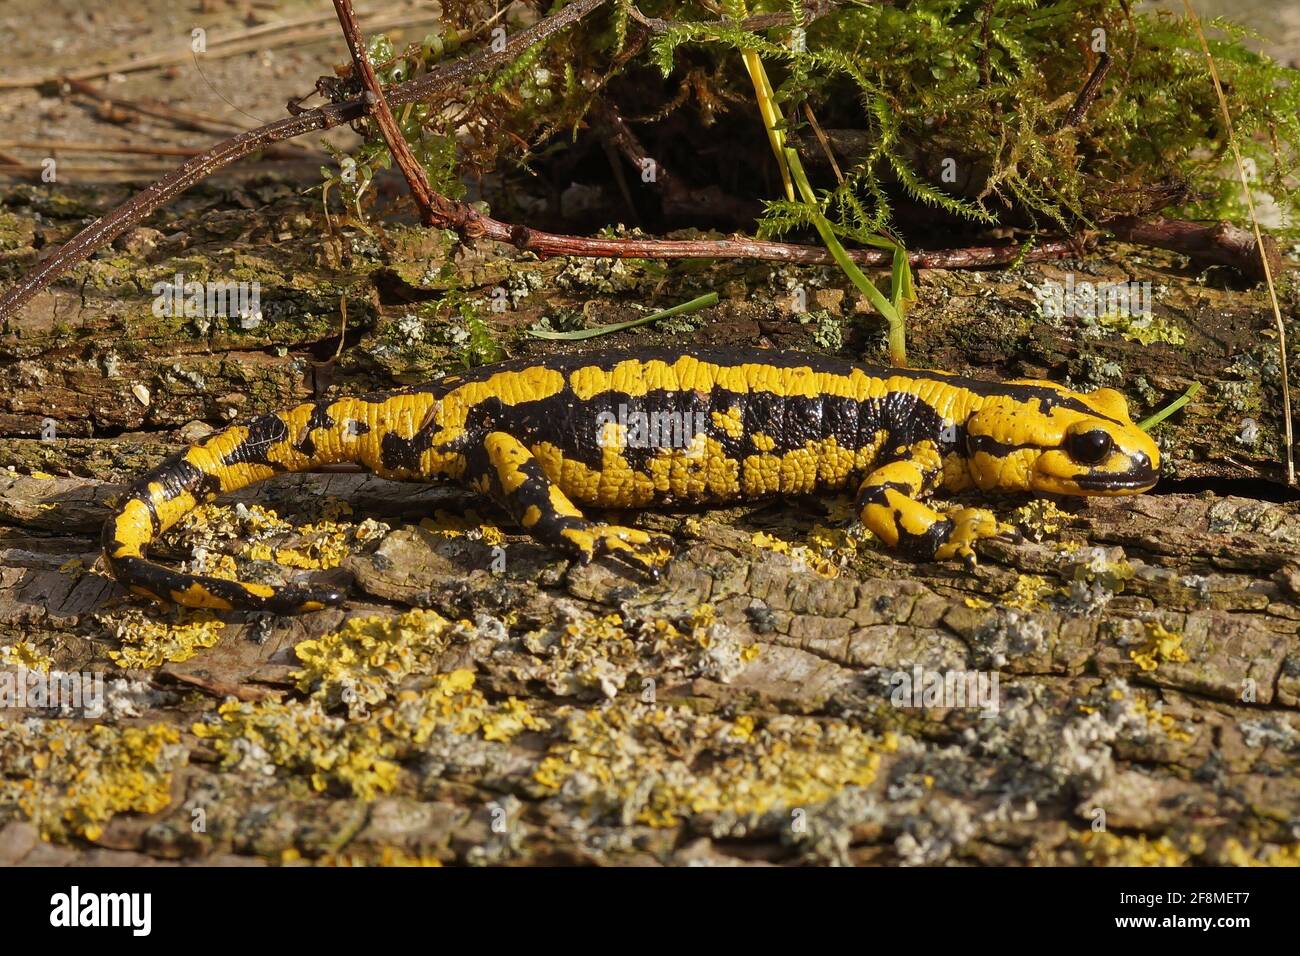 Bright yellow Tendi fire salamander (Salamandra bernardezi) crawling on the wooden surface Stock Photo